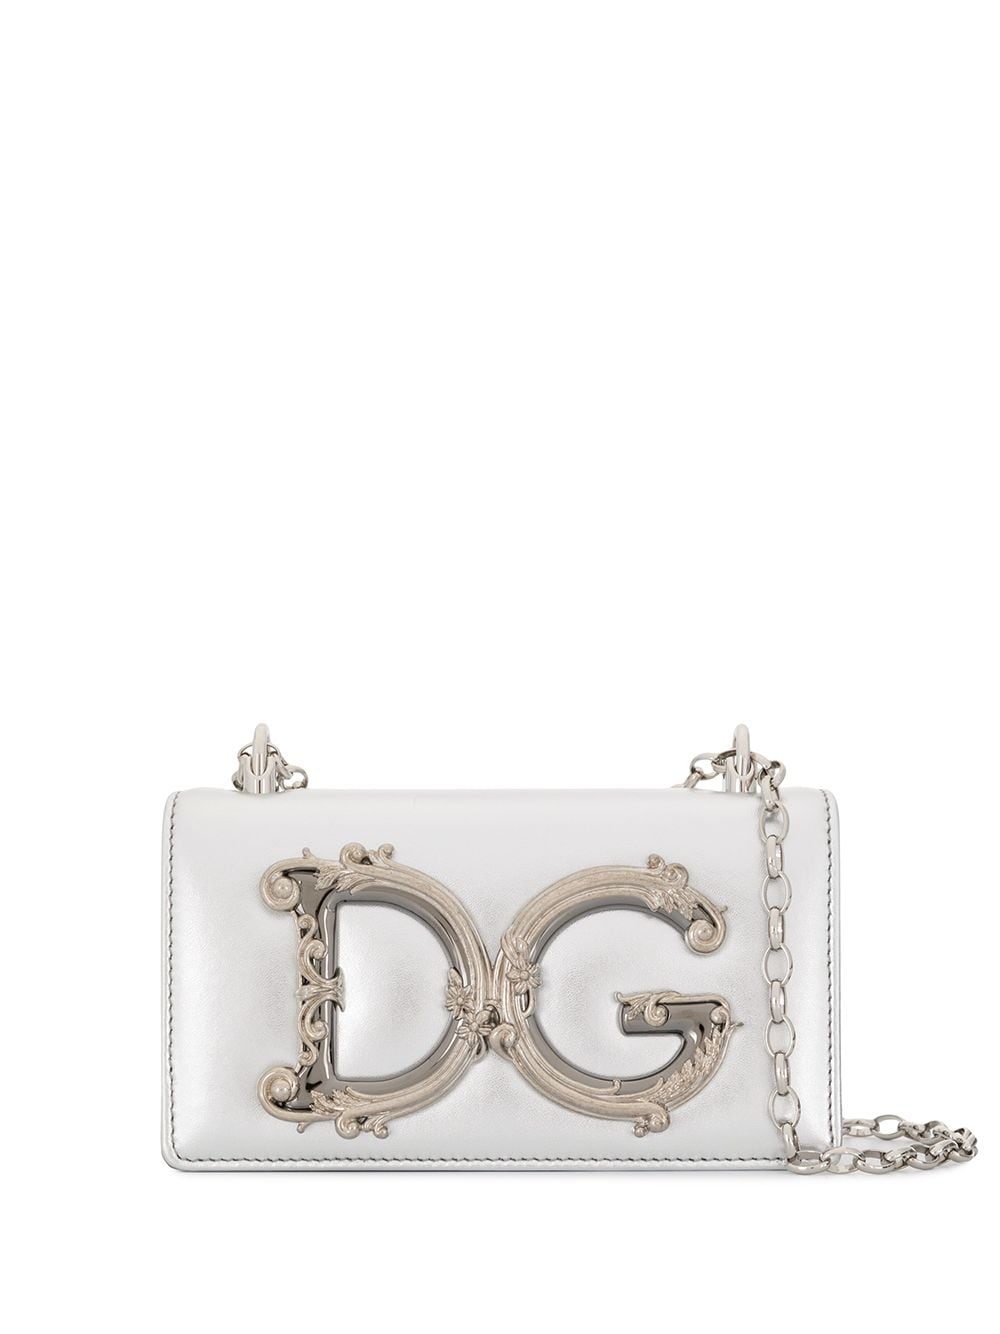 Dolce & Gabbana DG Girls leather phone bag - Silver von Dolce & Gabbana